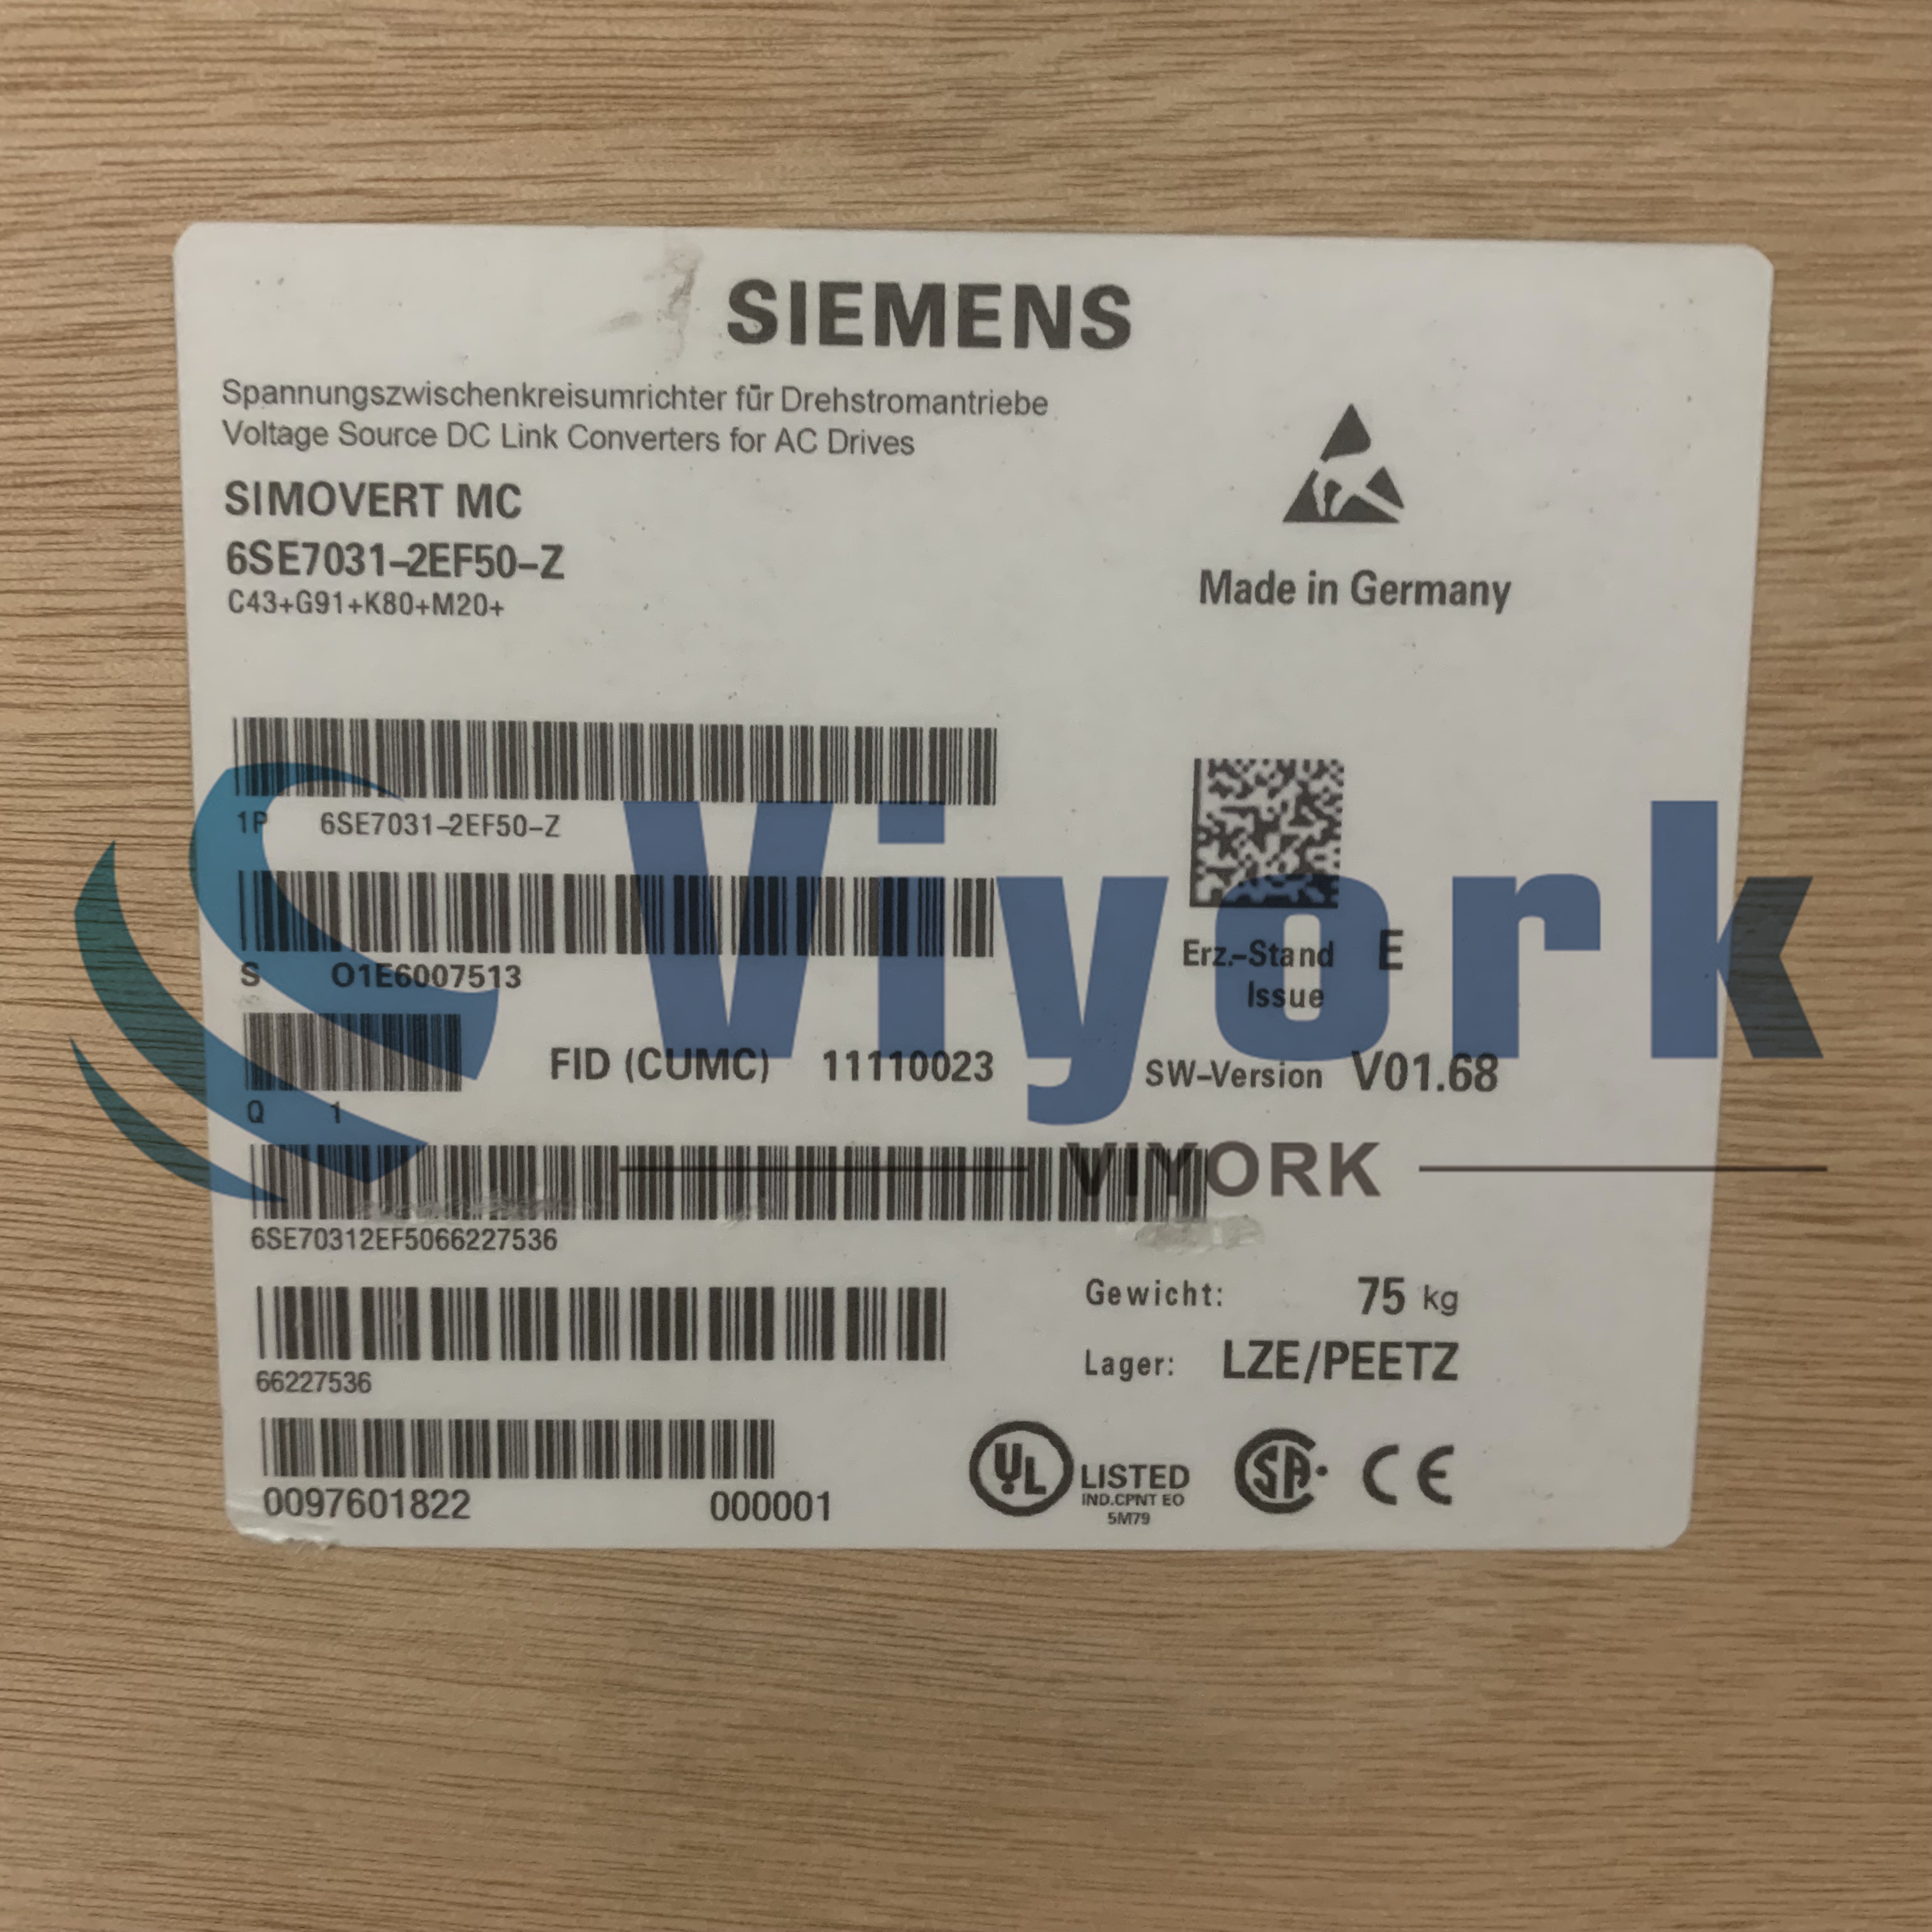 Siemens 6SE7031-2EF50-Z Z=C43+G91+K80+M20 AC DRIVE 3AC 380-480V 50/60HZ NEW